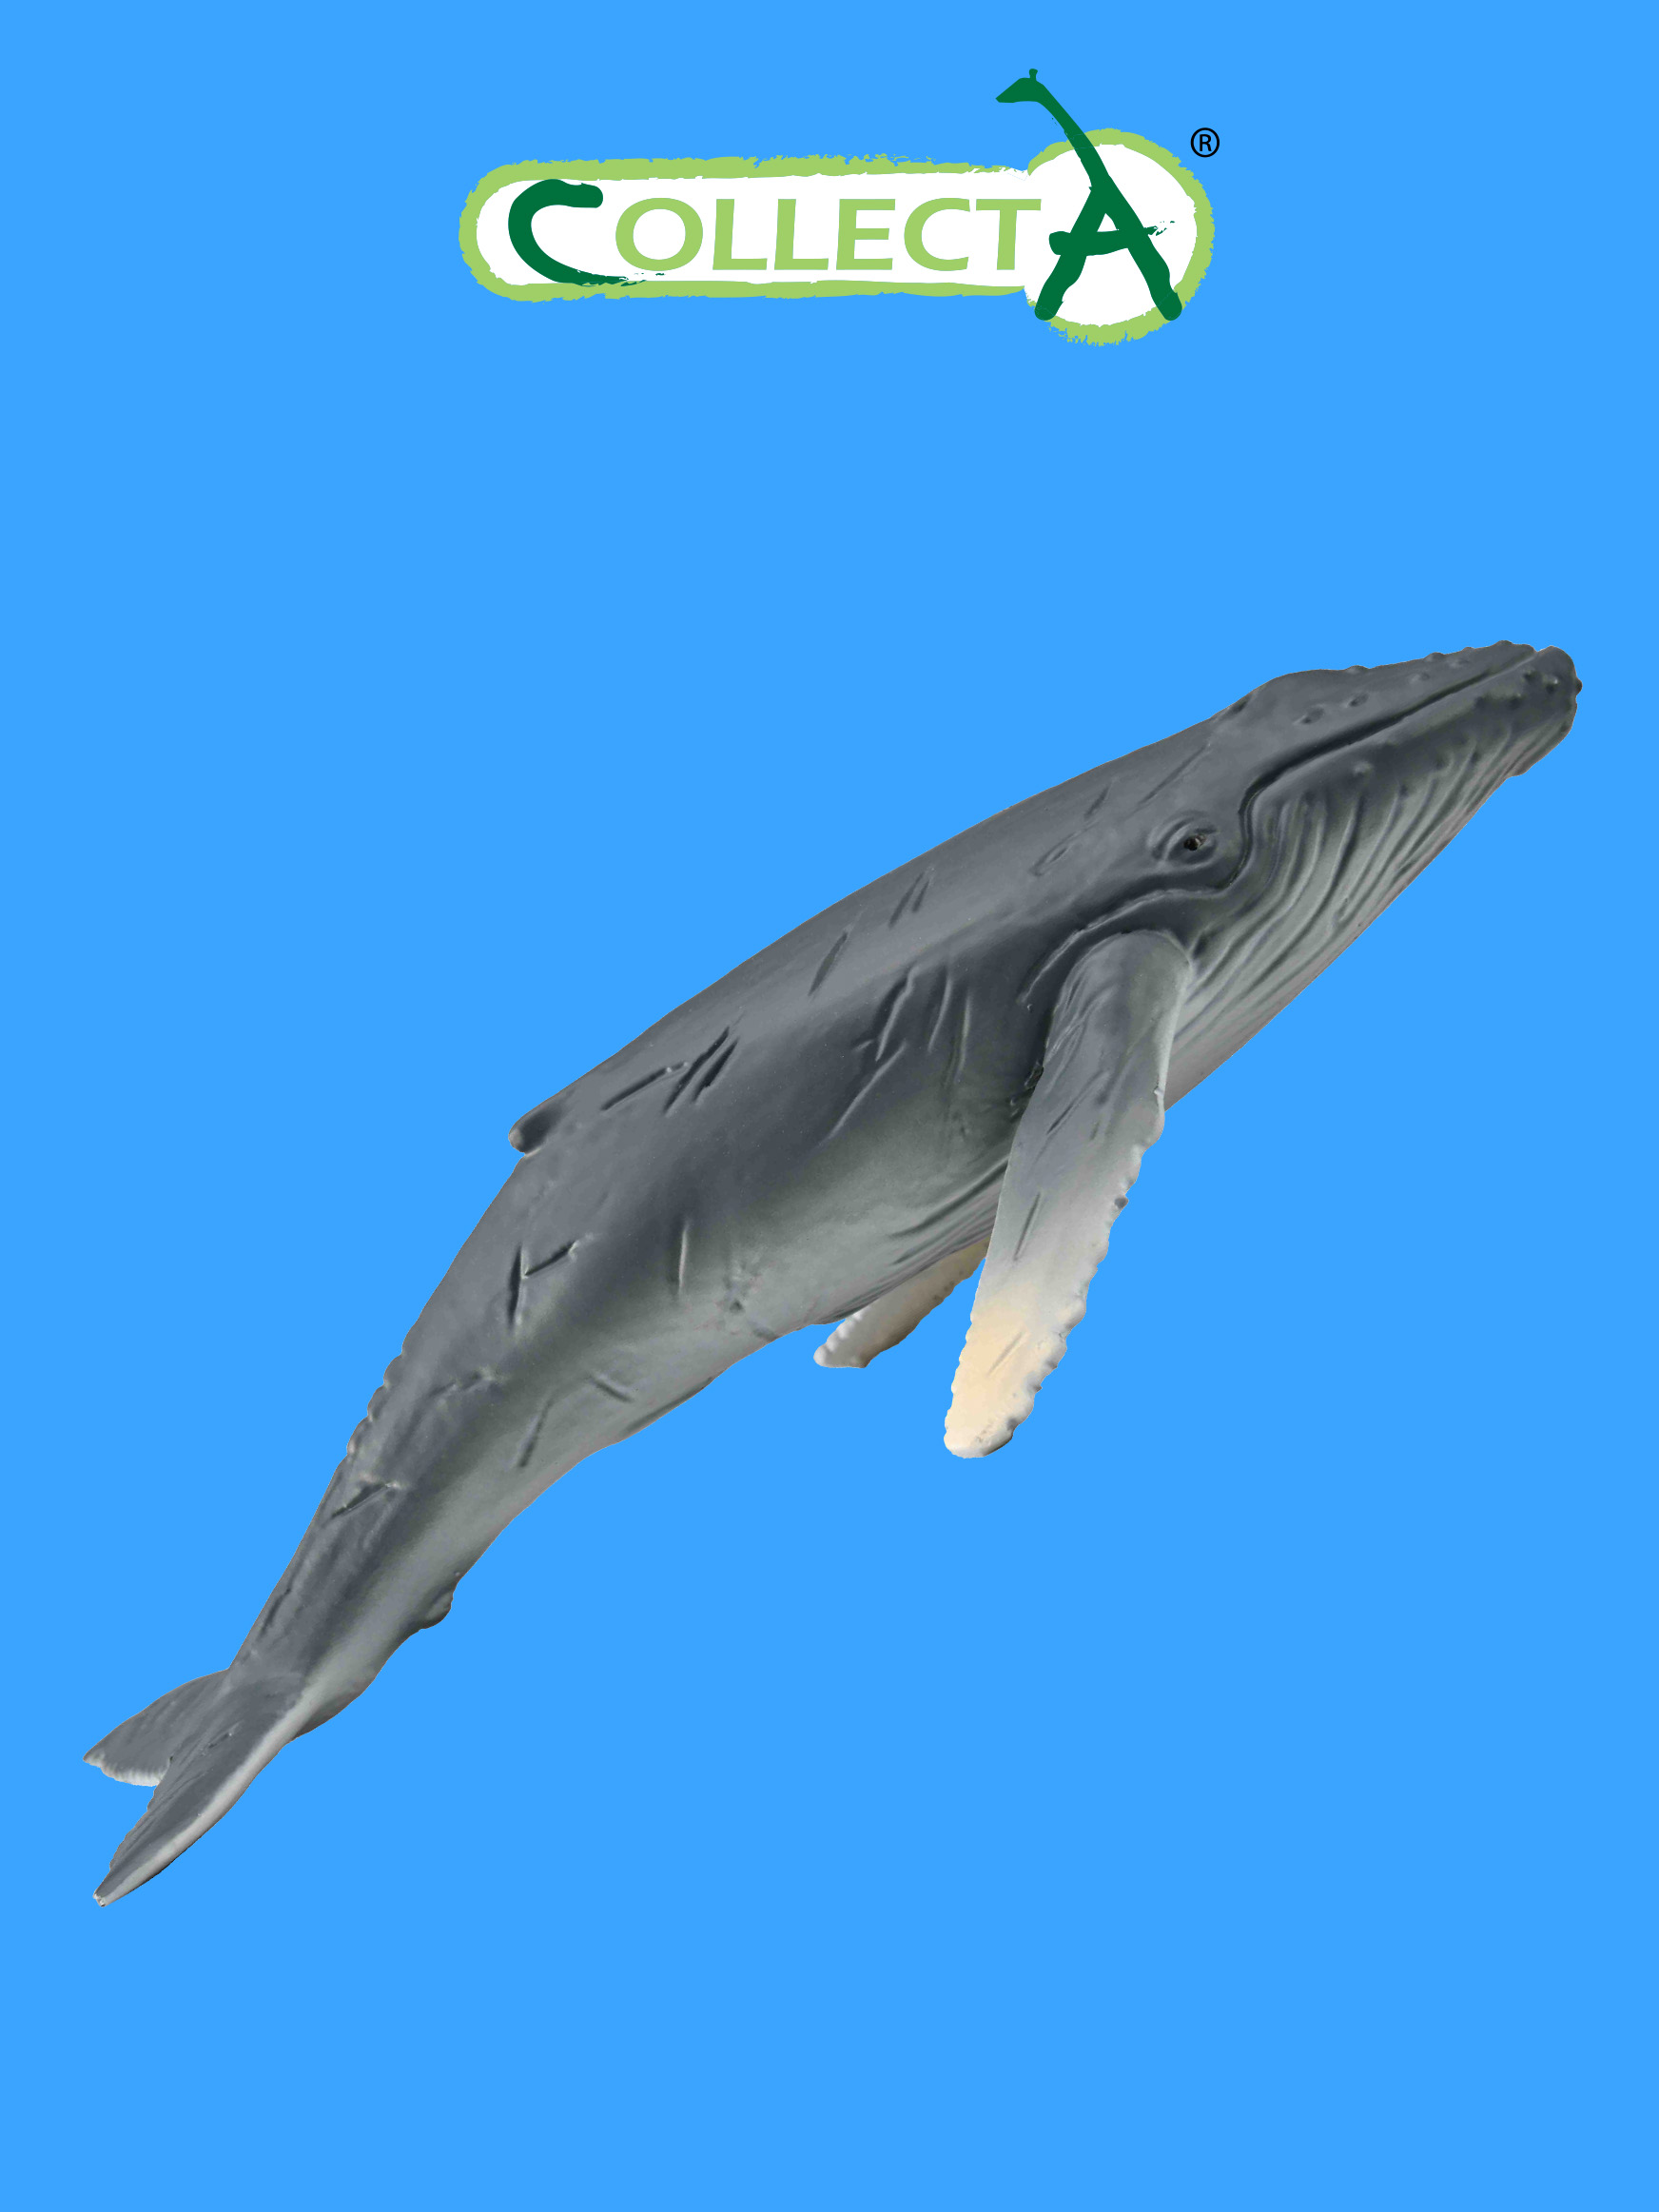 Фигурка Collecta животного Горбатый кит детёныш фигурка морского животного collecta горбатый кит